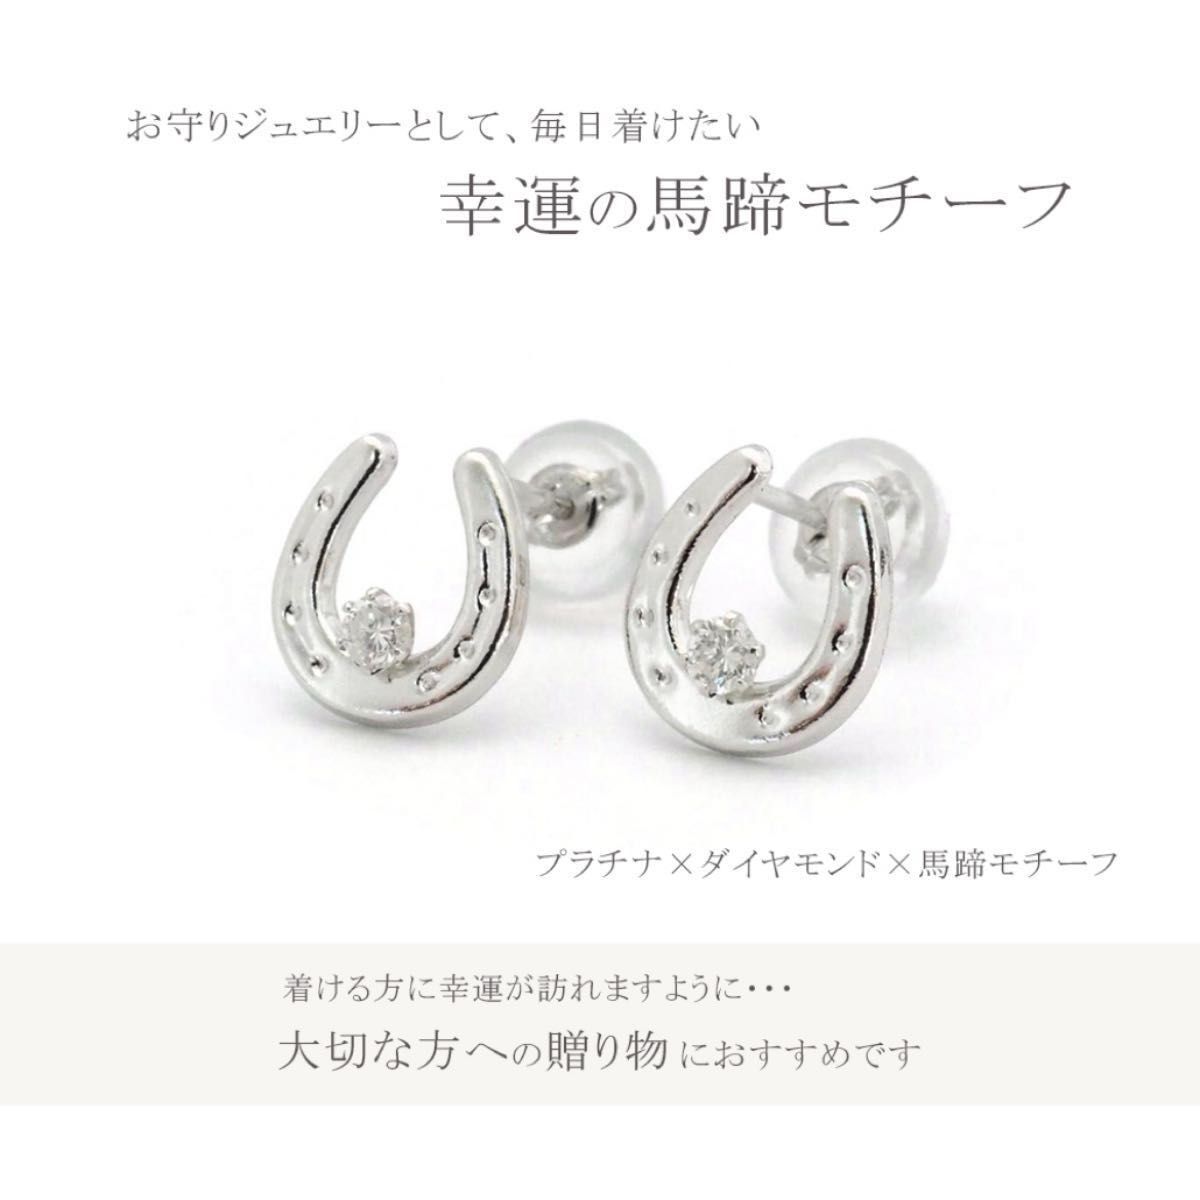 新品 PT900 プラチナ 天然ダイヤモンド ピアス 刻印あり 上質 日本製  ペア